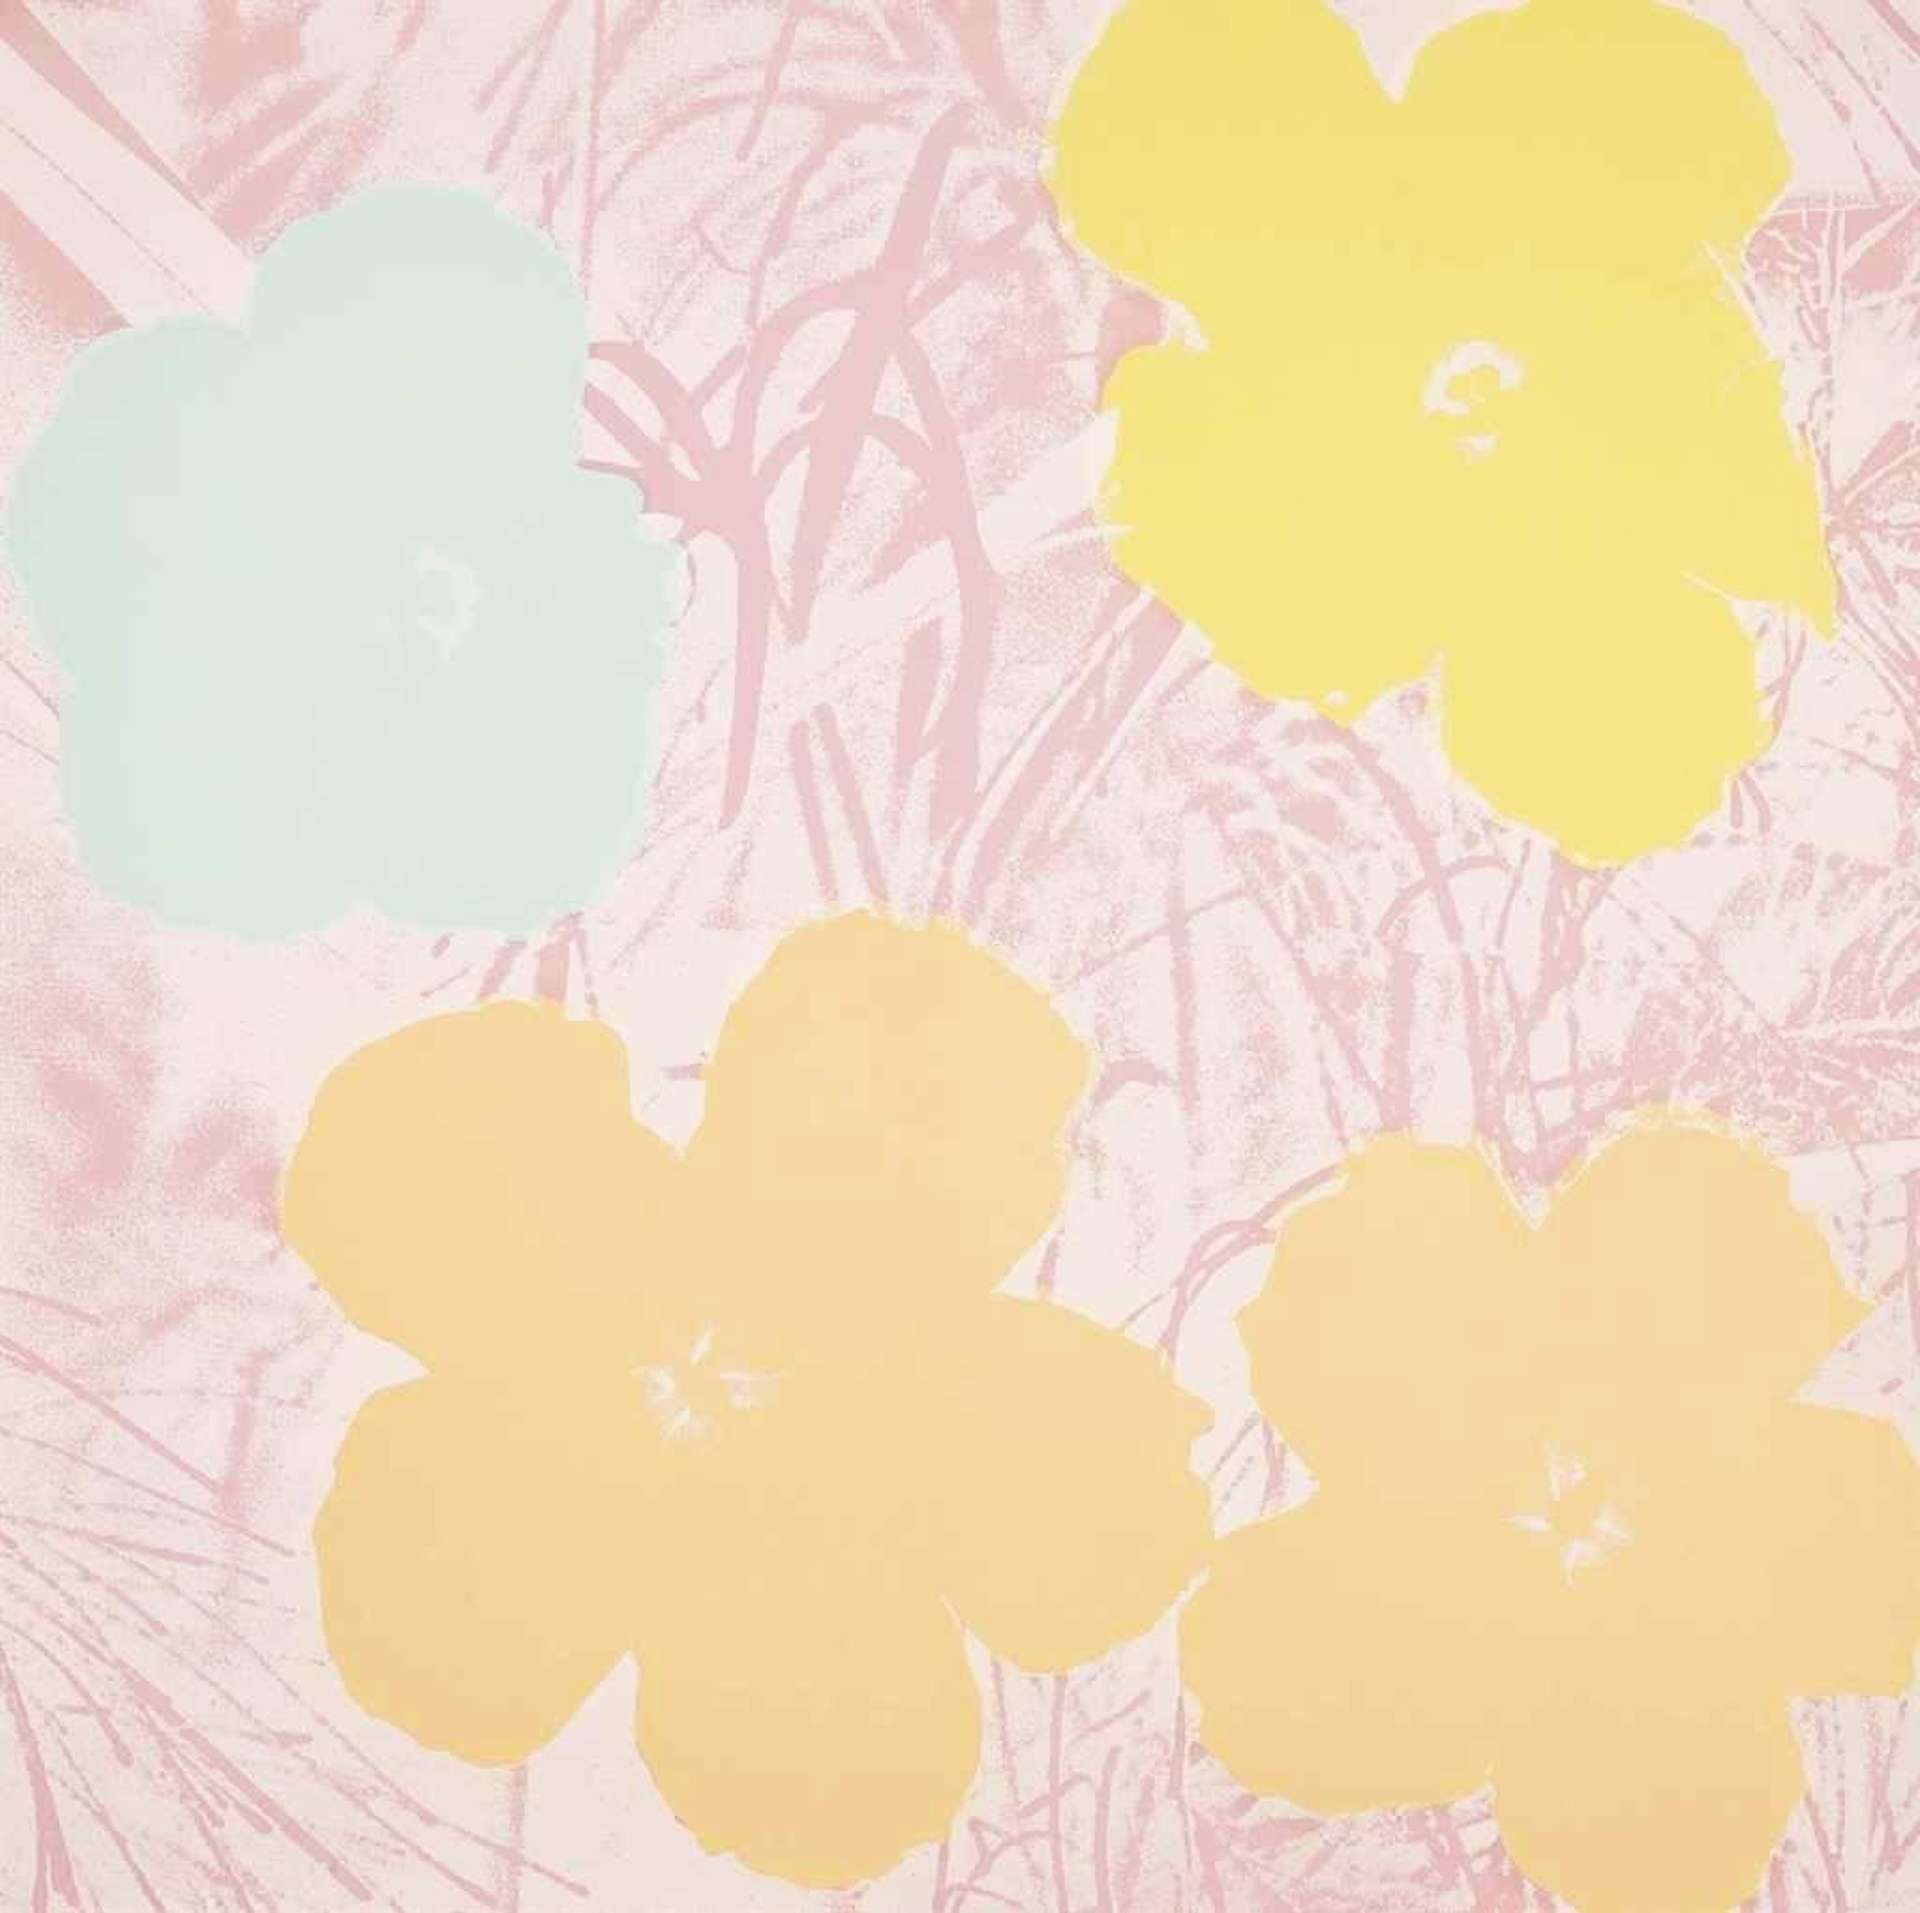 Flowers (F. & S. II.70) by Andy Warhol - MyArtBroker